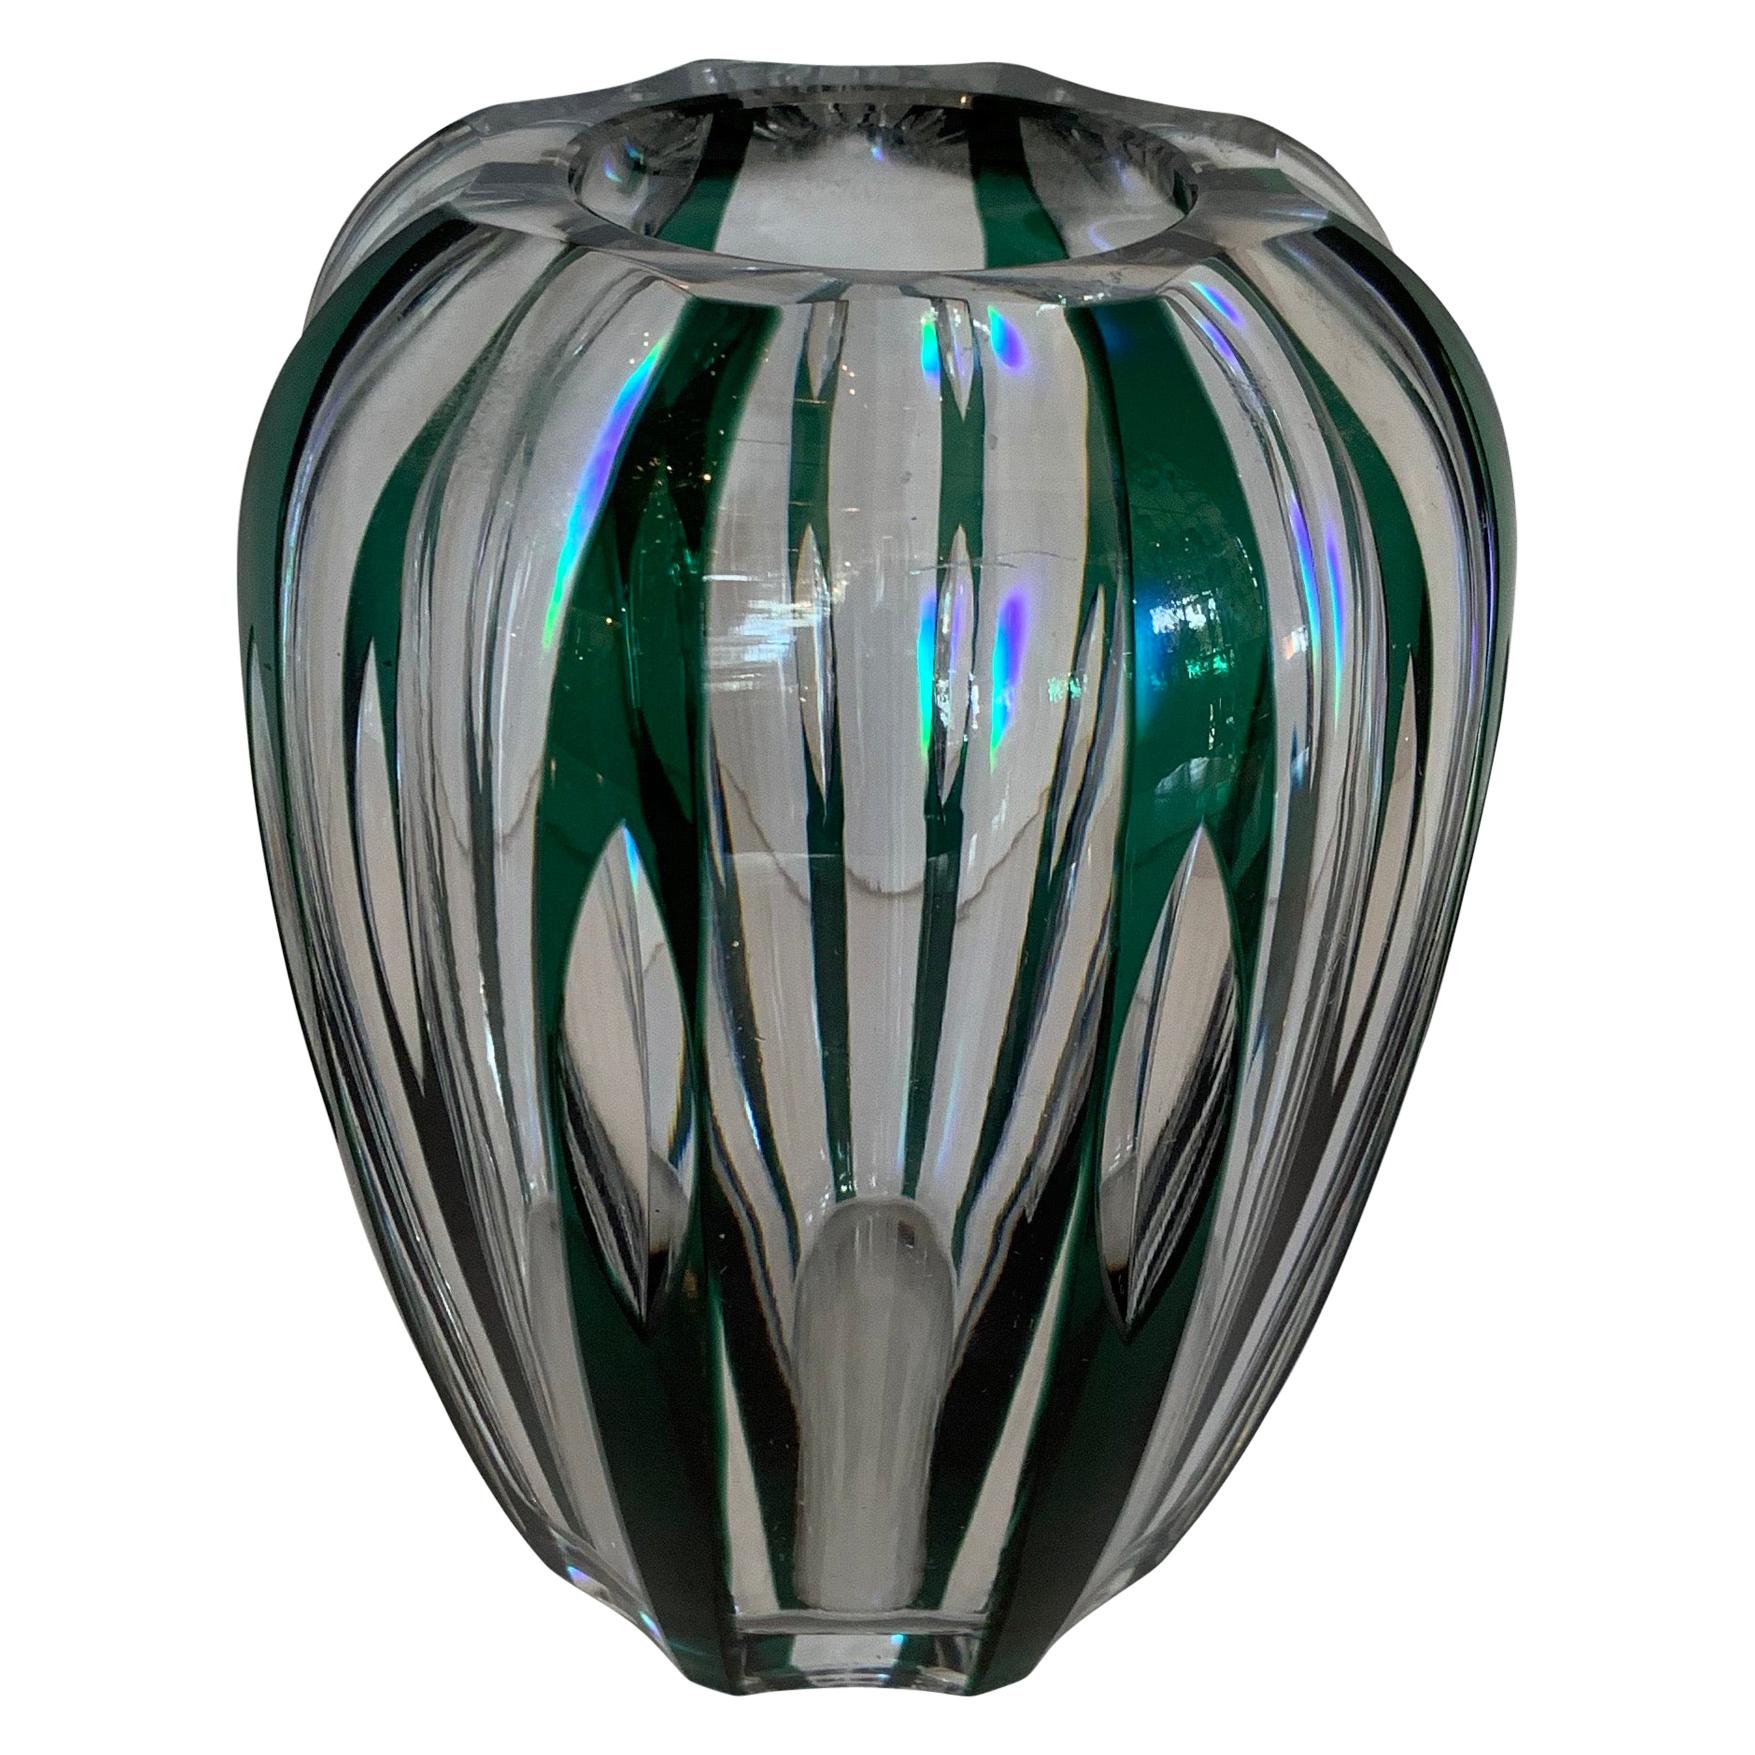 Magnifique vase à bourgeons en cristal Val Saint Lambert vert émeraude taillé en transparence